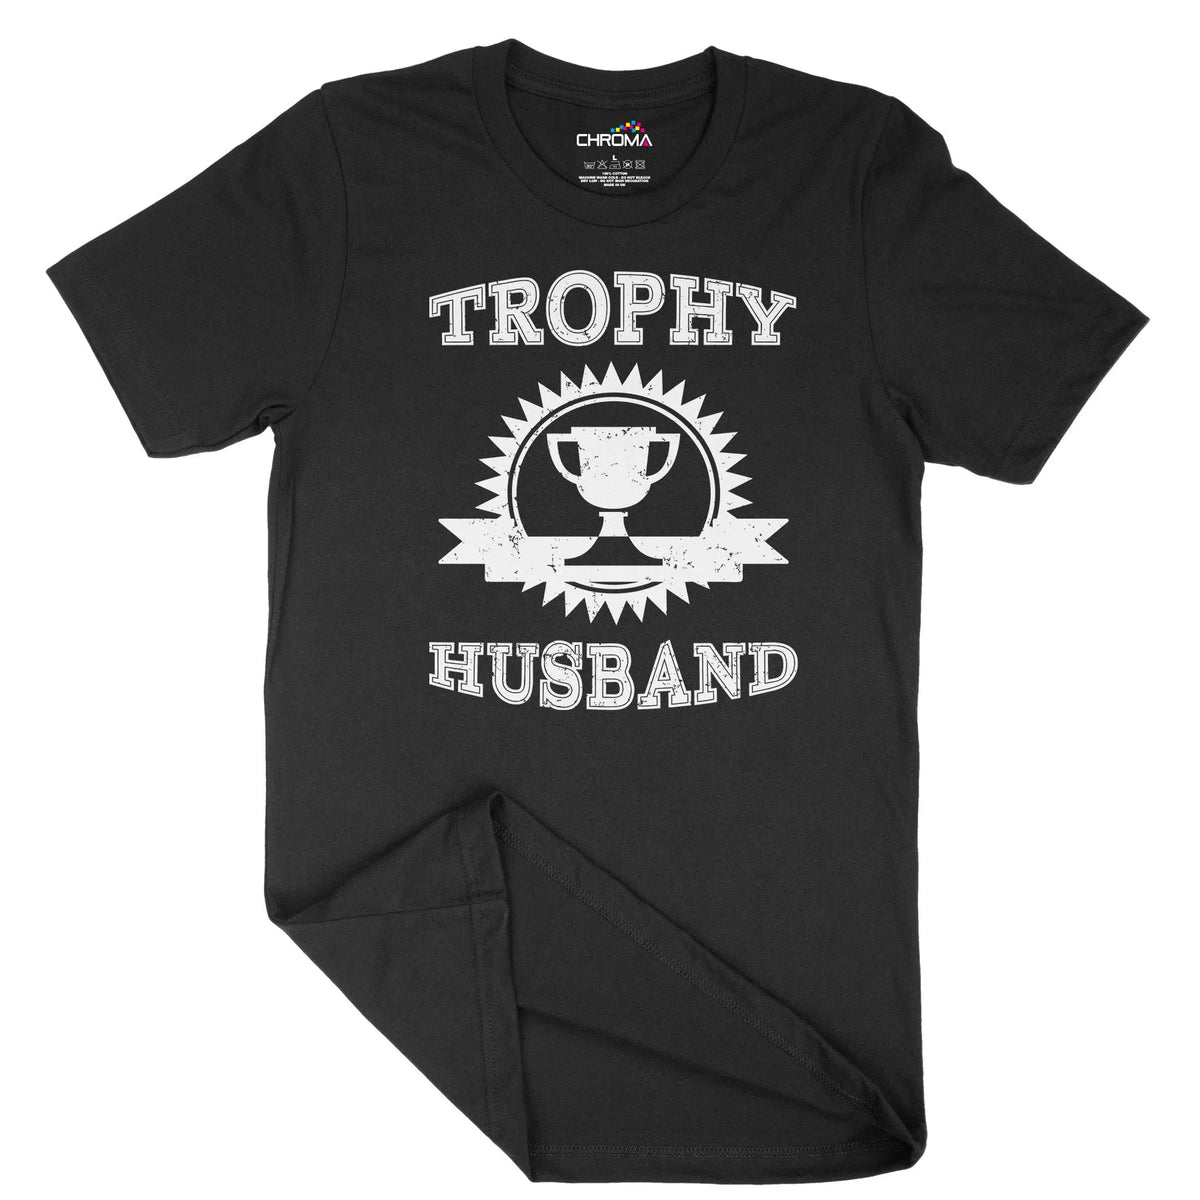 Trophy Husband Unisex Adult T-Shirt | Quality Slogan Clothing Chroma Clothing